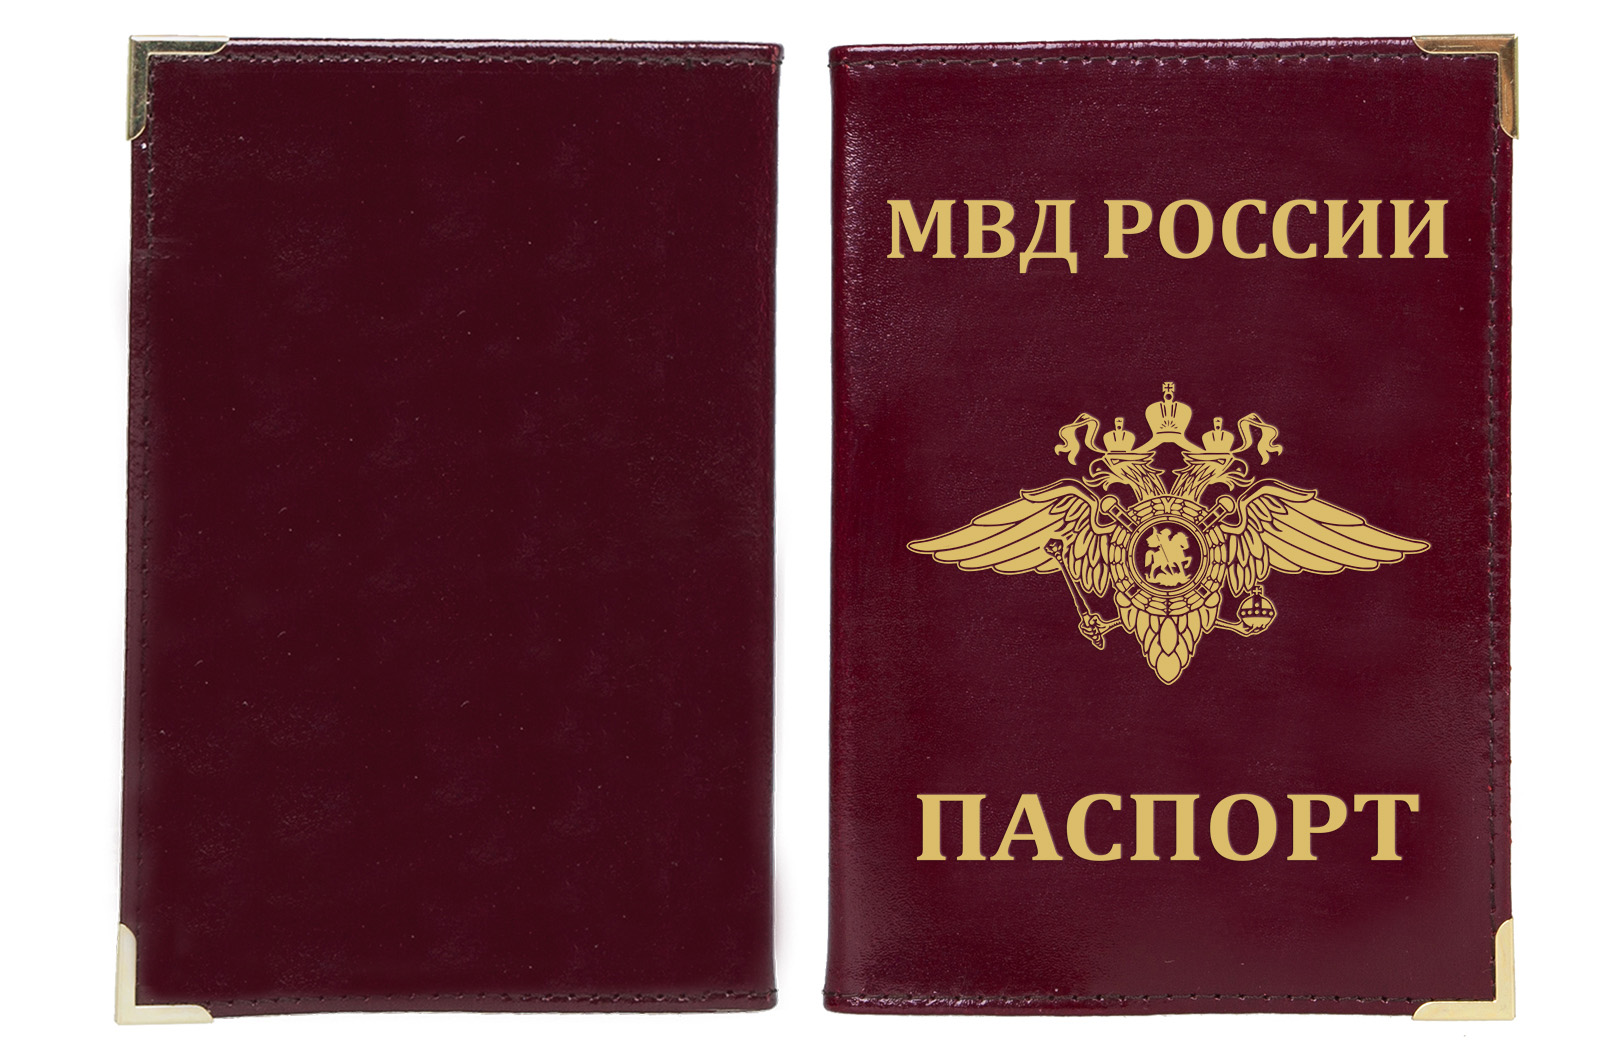 Купить обложку на паспорт с тиснением герба МВД России